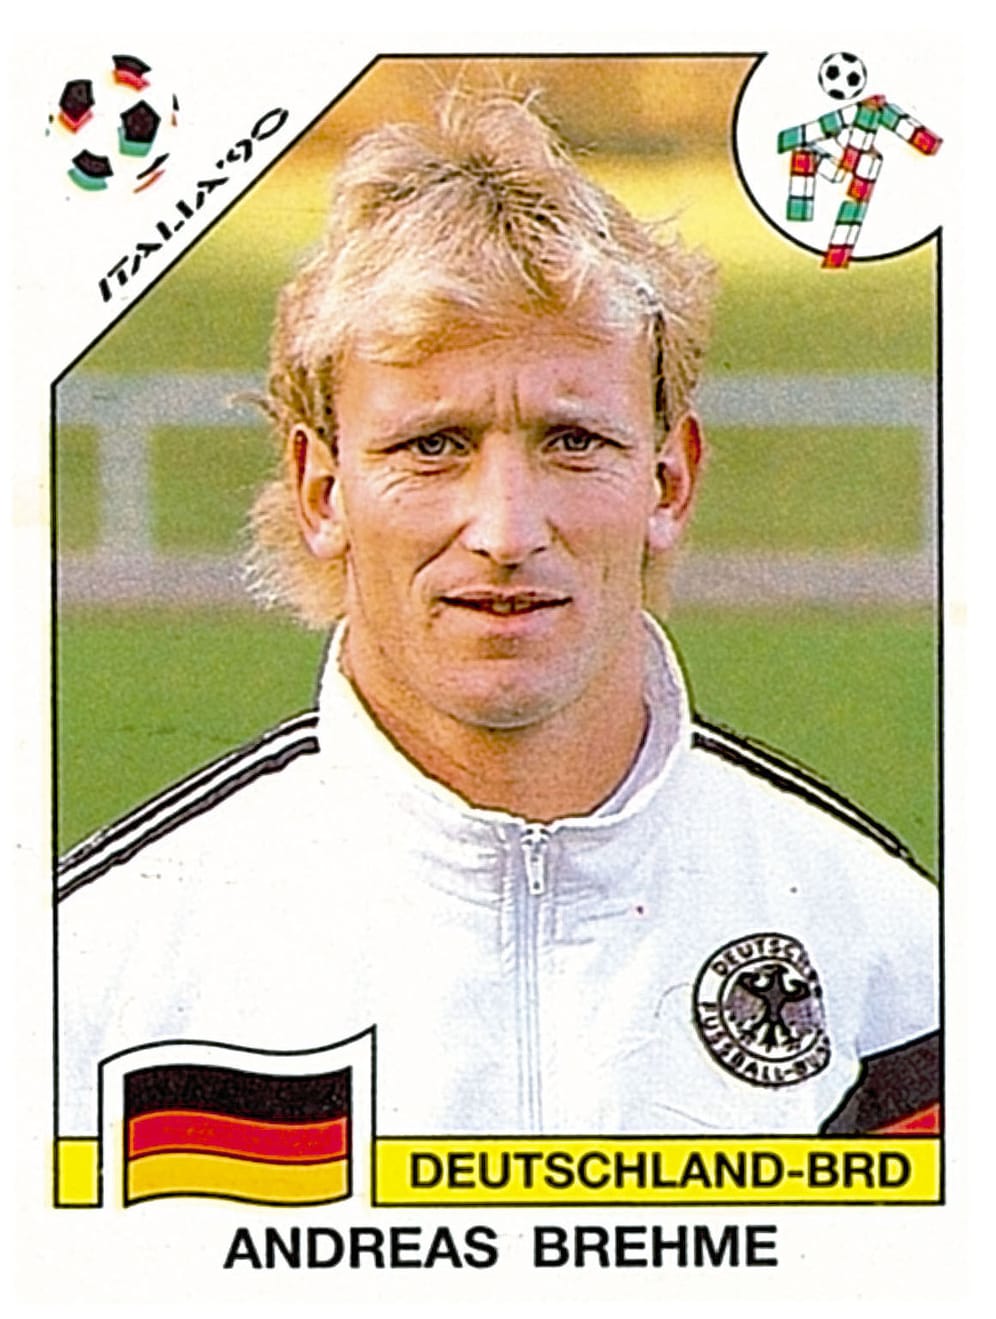 Andi Brehme war der WM-Held von 1990. Acht Jahre später beendete er seine Fußballerkarriere beim FC Kaiserslautern und war anschließend Trainer. Zuletzt baute er eine Fußballschule im ägyptischen Hurghada auf.